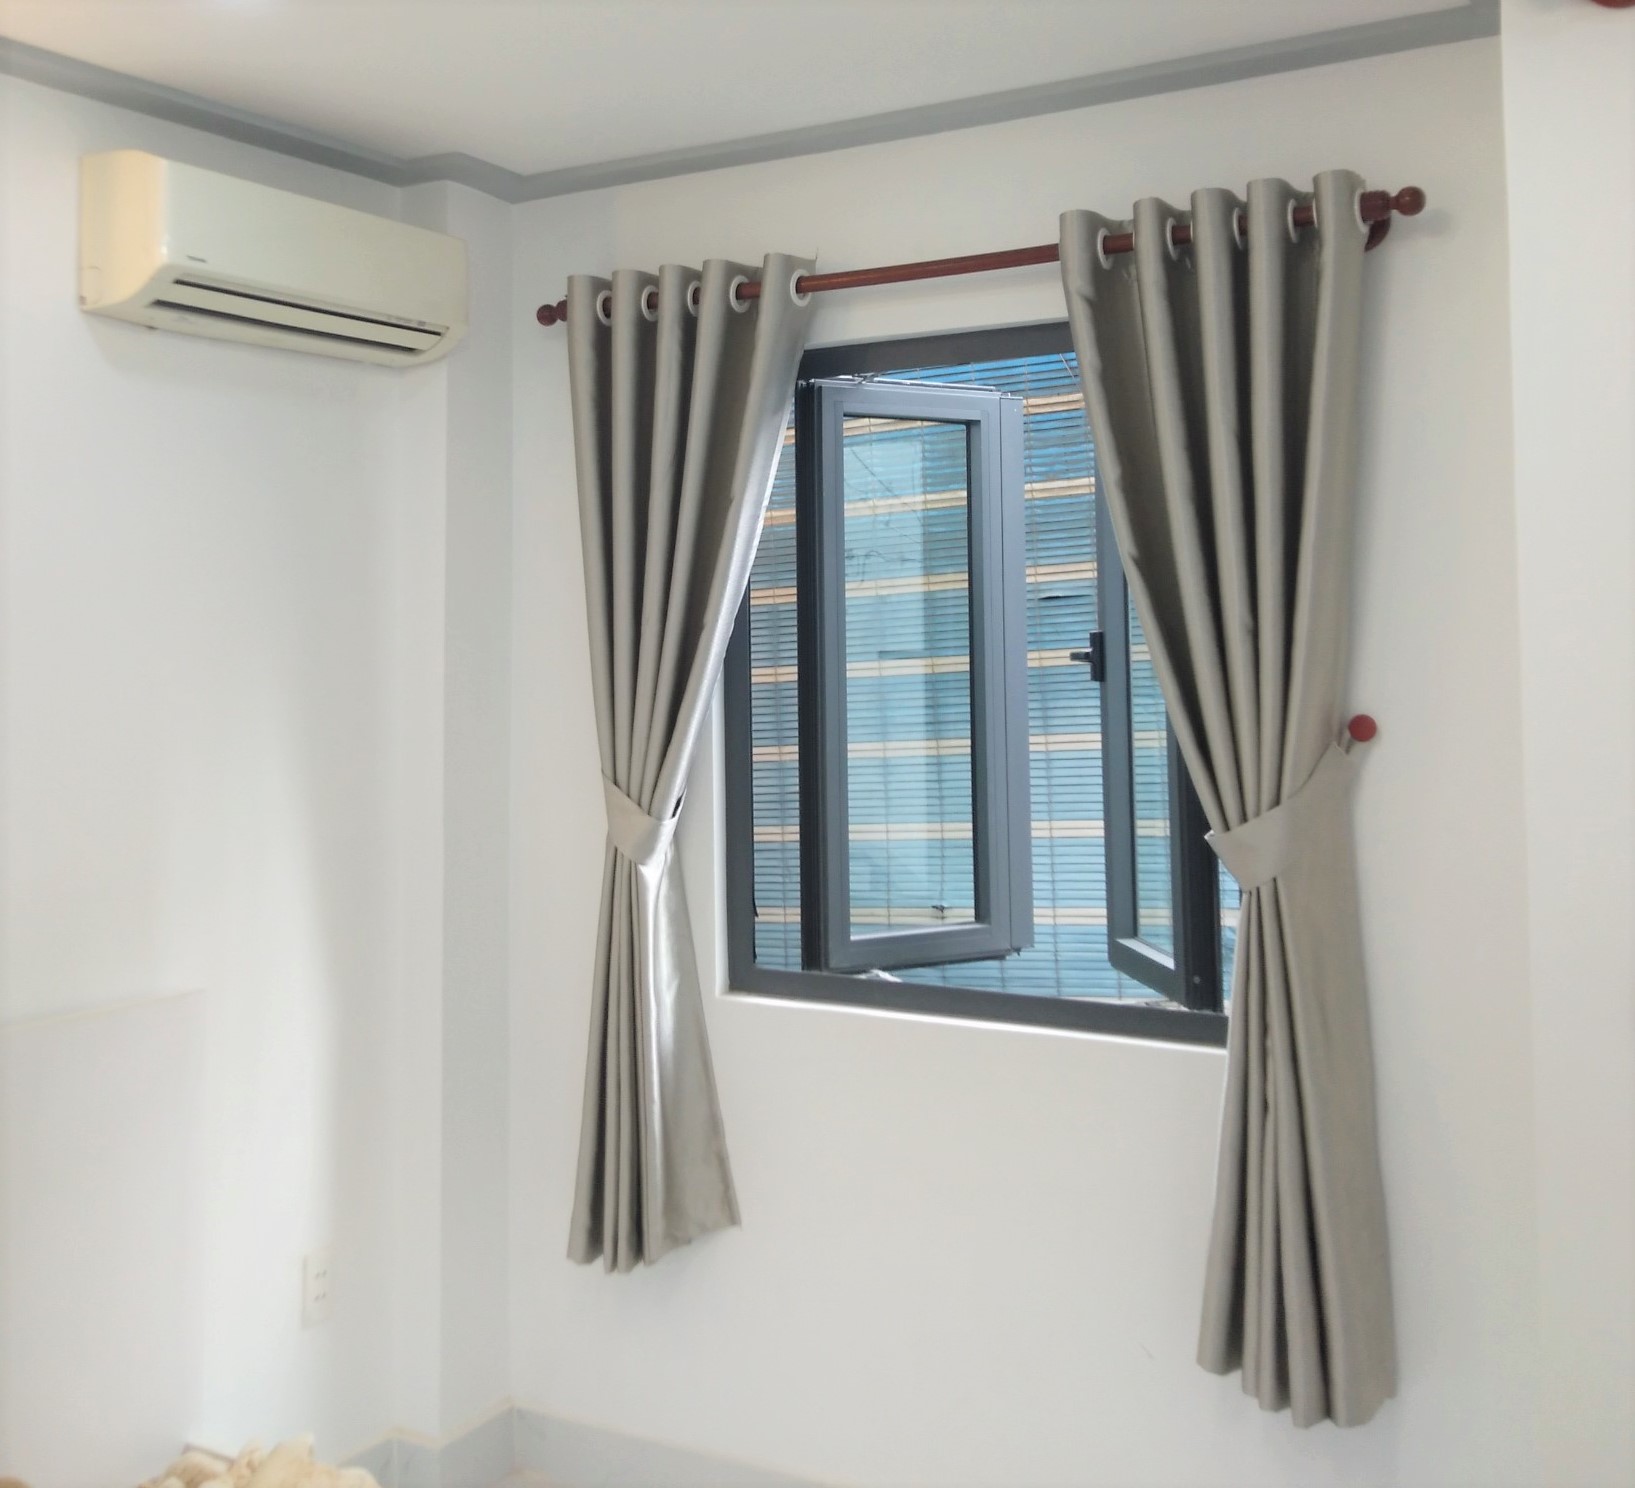 Rèm ngăn lạnh xám nhạt-giá rẻ, rèm cản nắng cửa sổ cửa chính phòng ngủ